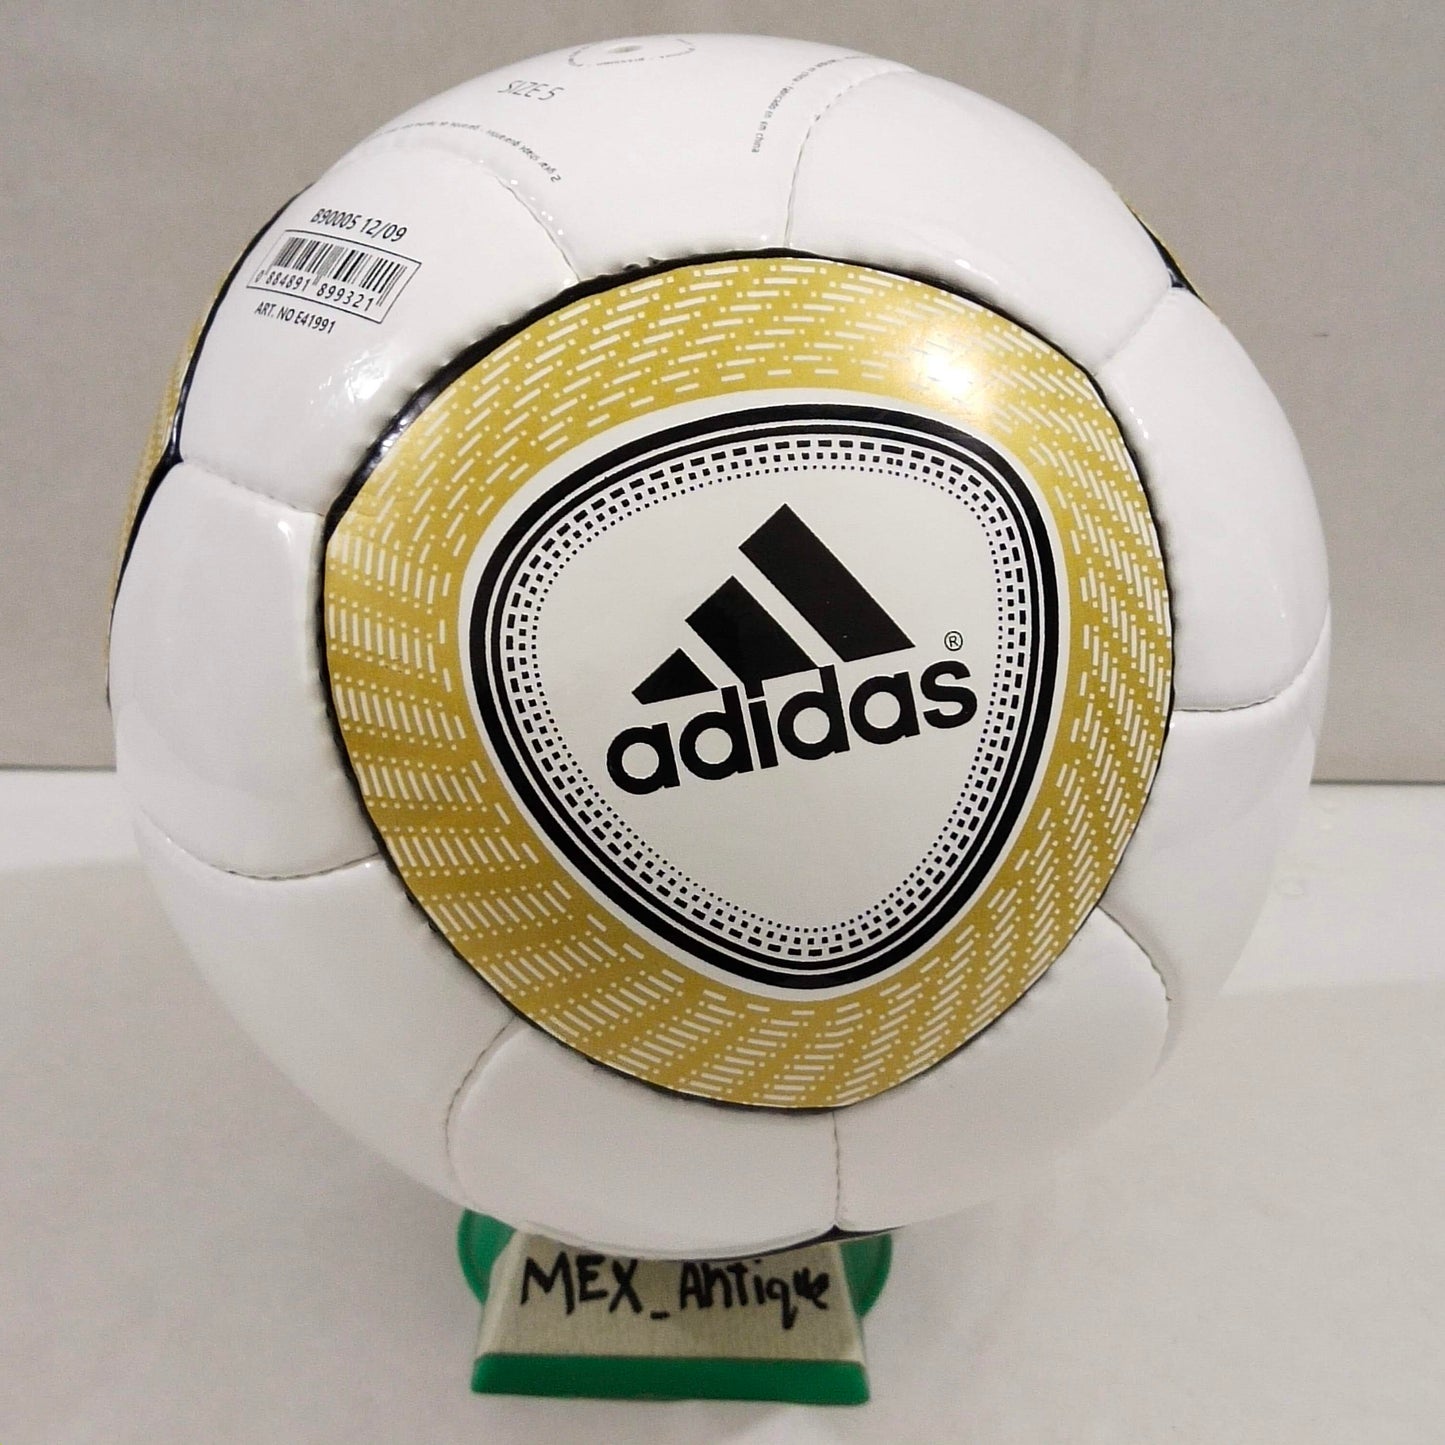 Adidas Jo'bulani Glider | 2010 | FIFA World Cup Ball | SIZE 03